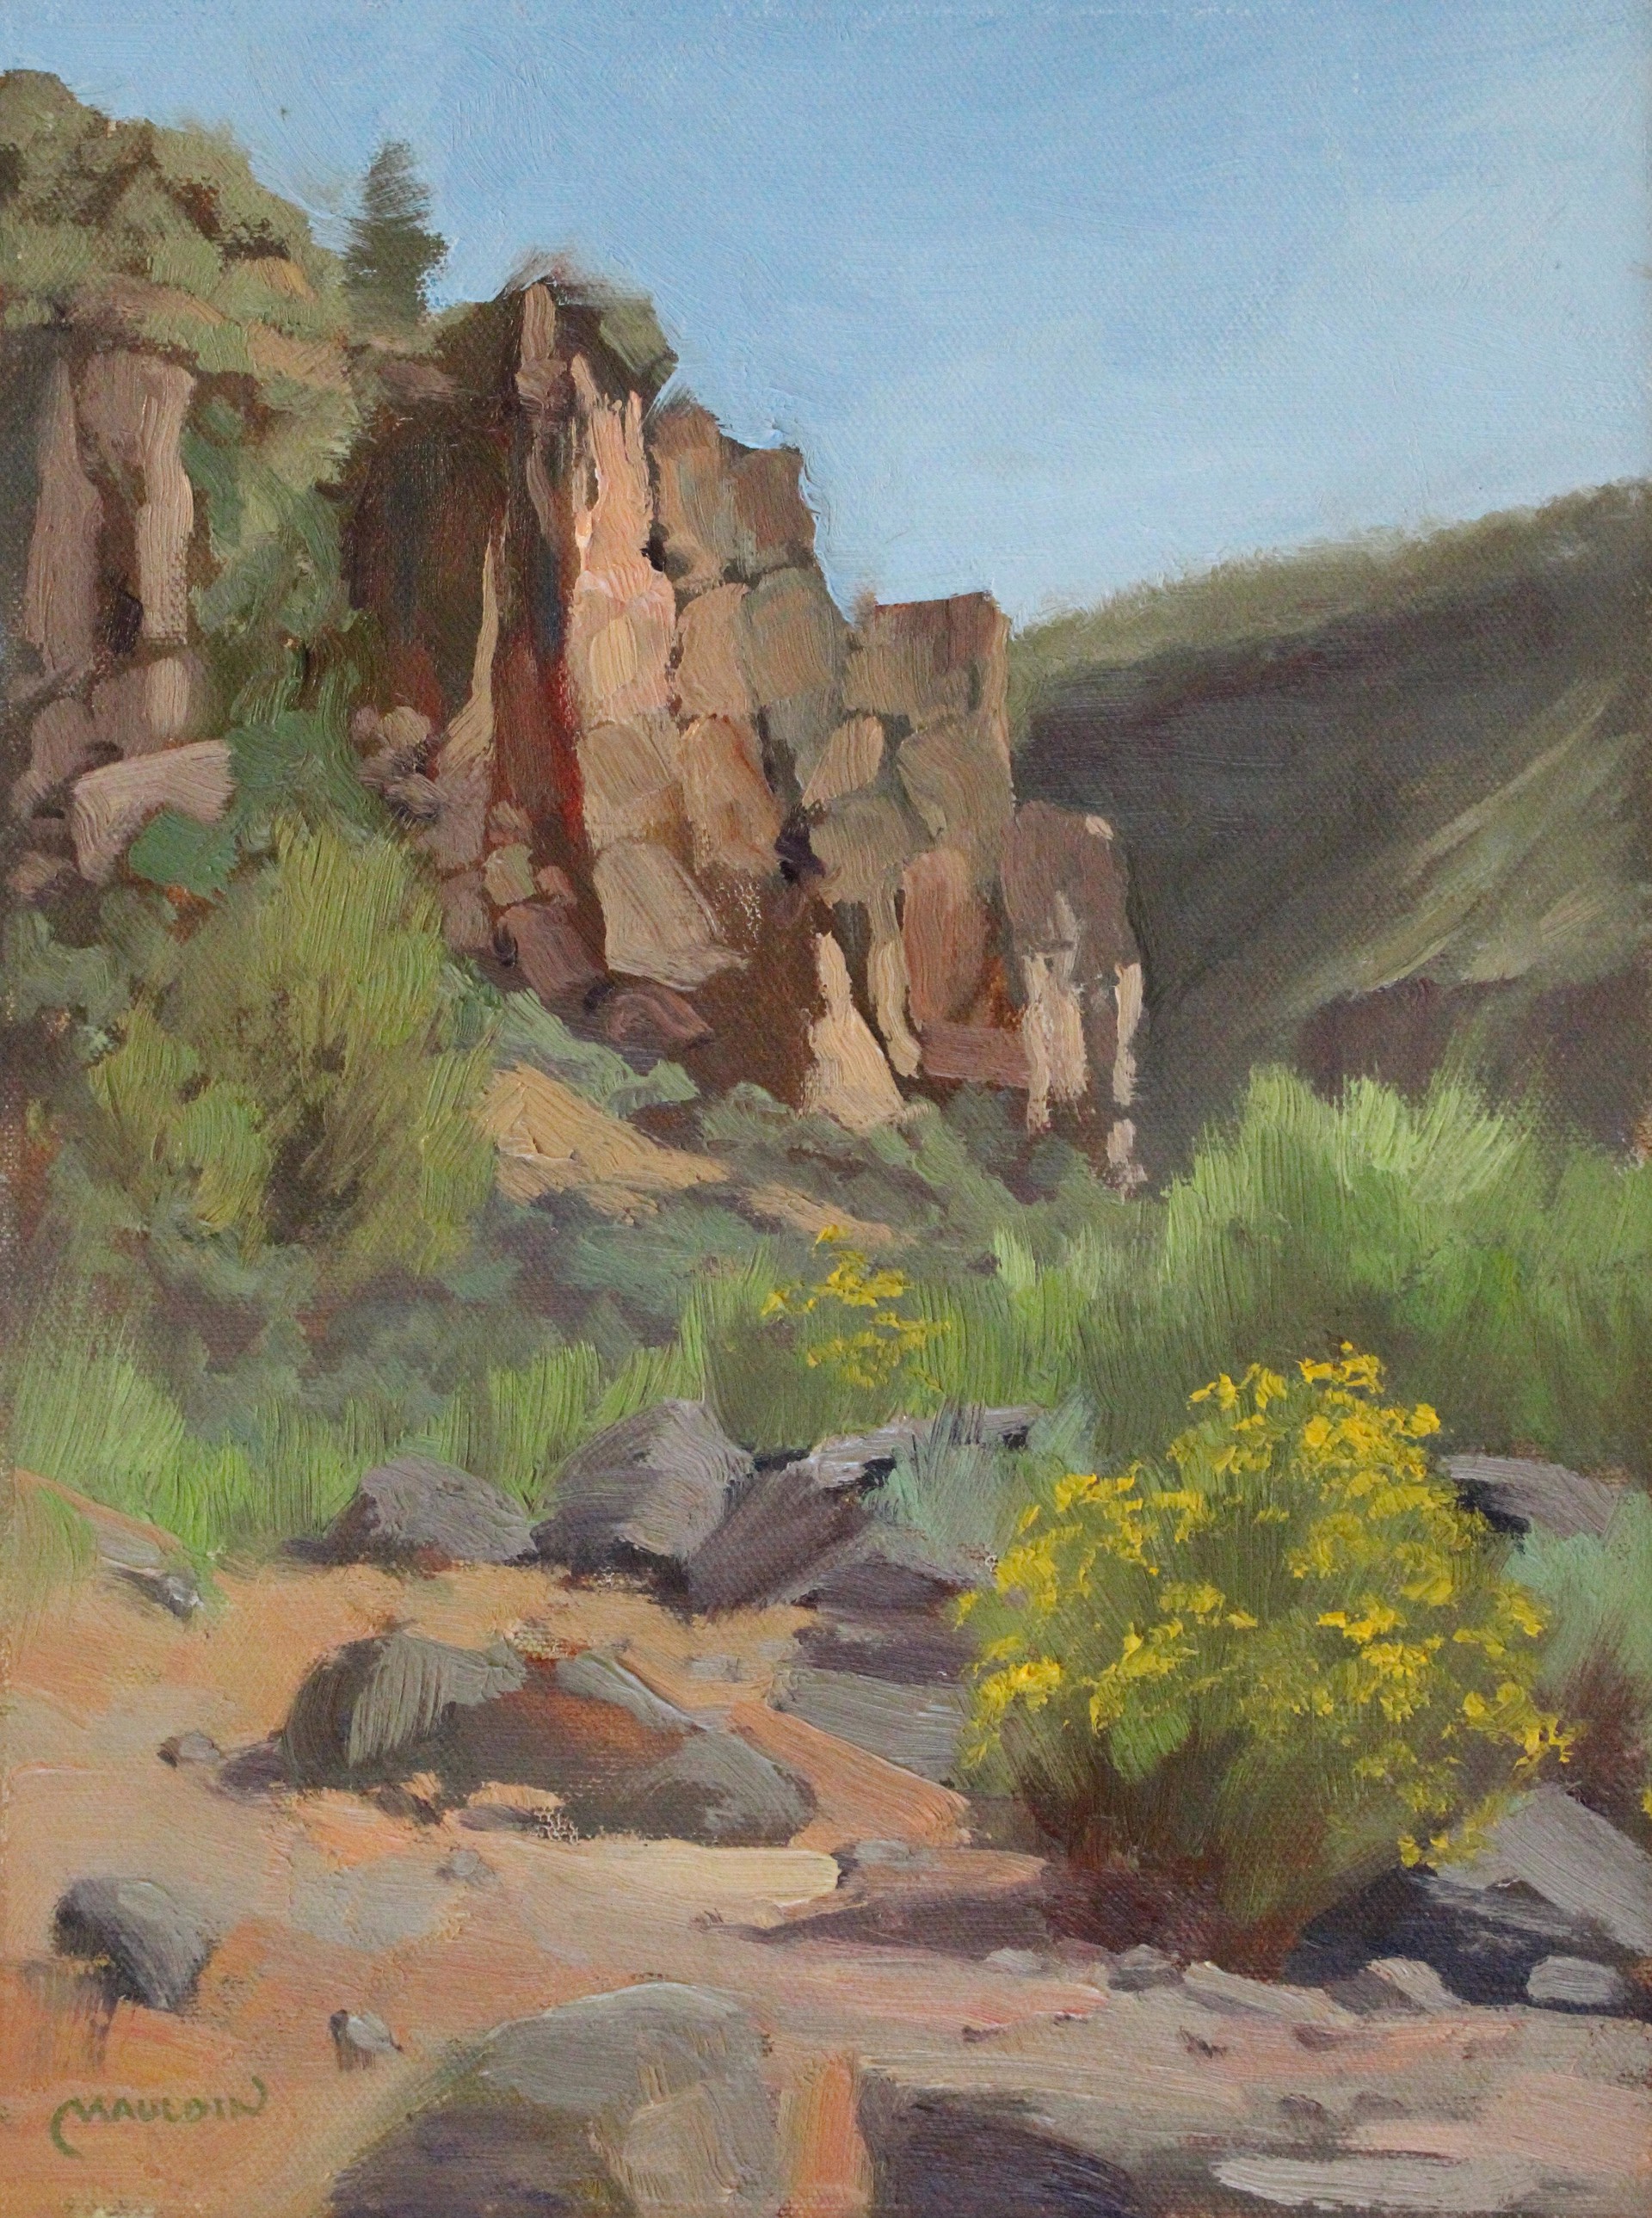 Canyon Wall by Chuck Mauldin